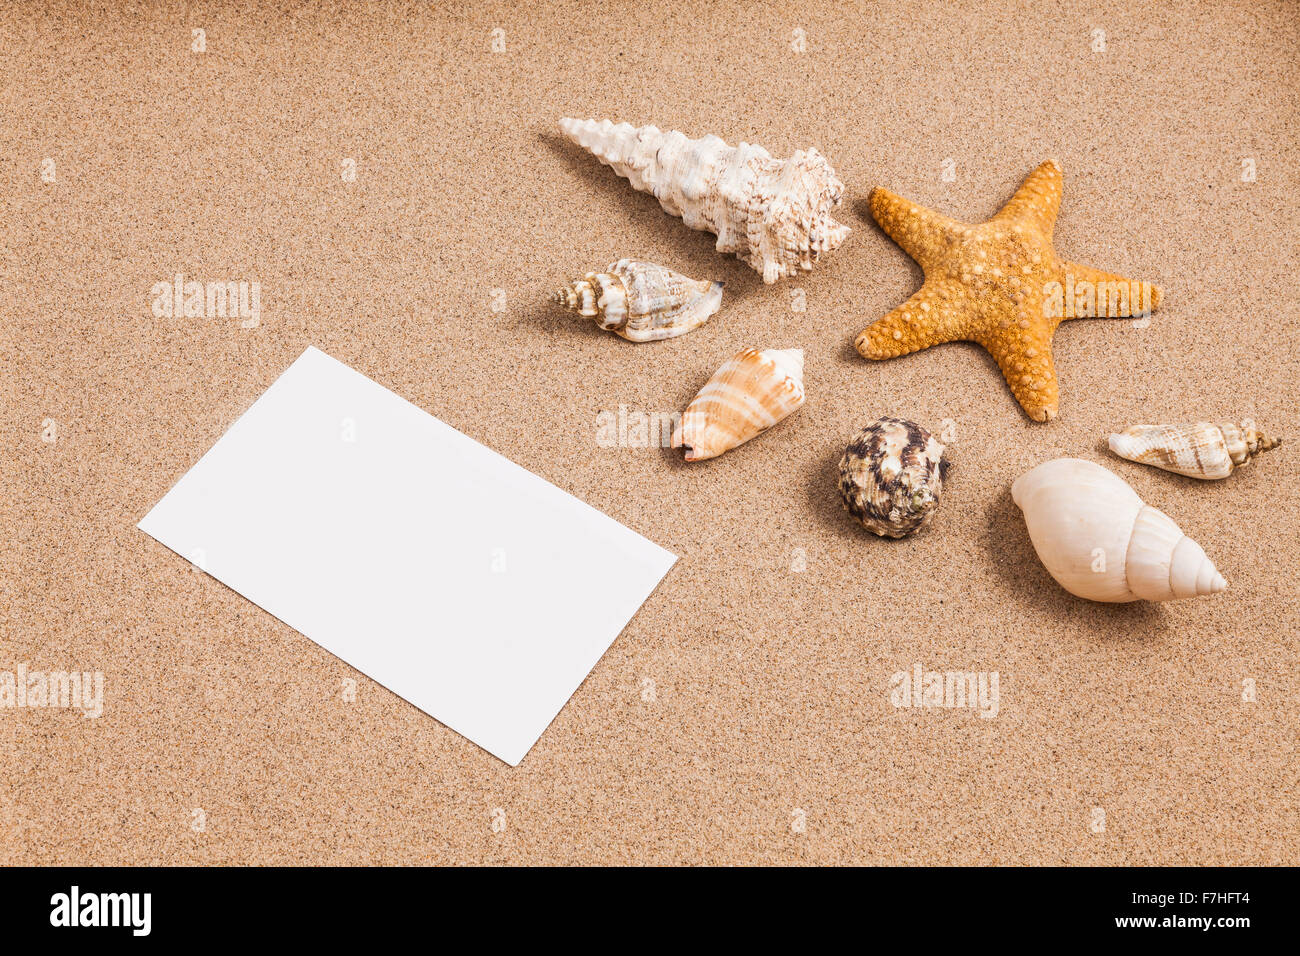 Conchas en la arena con una baja iluminación Foto de stock